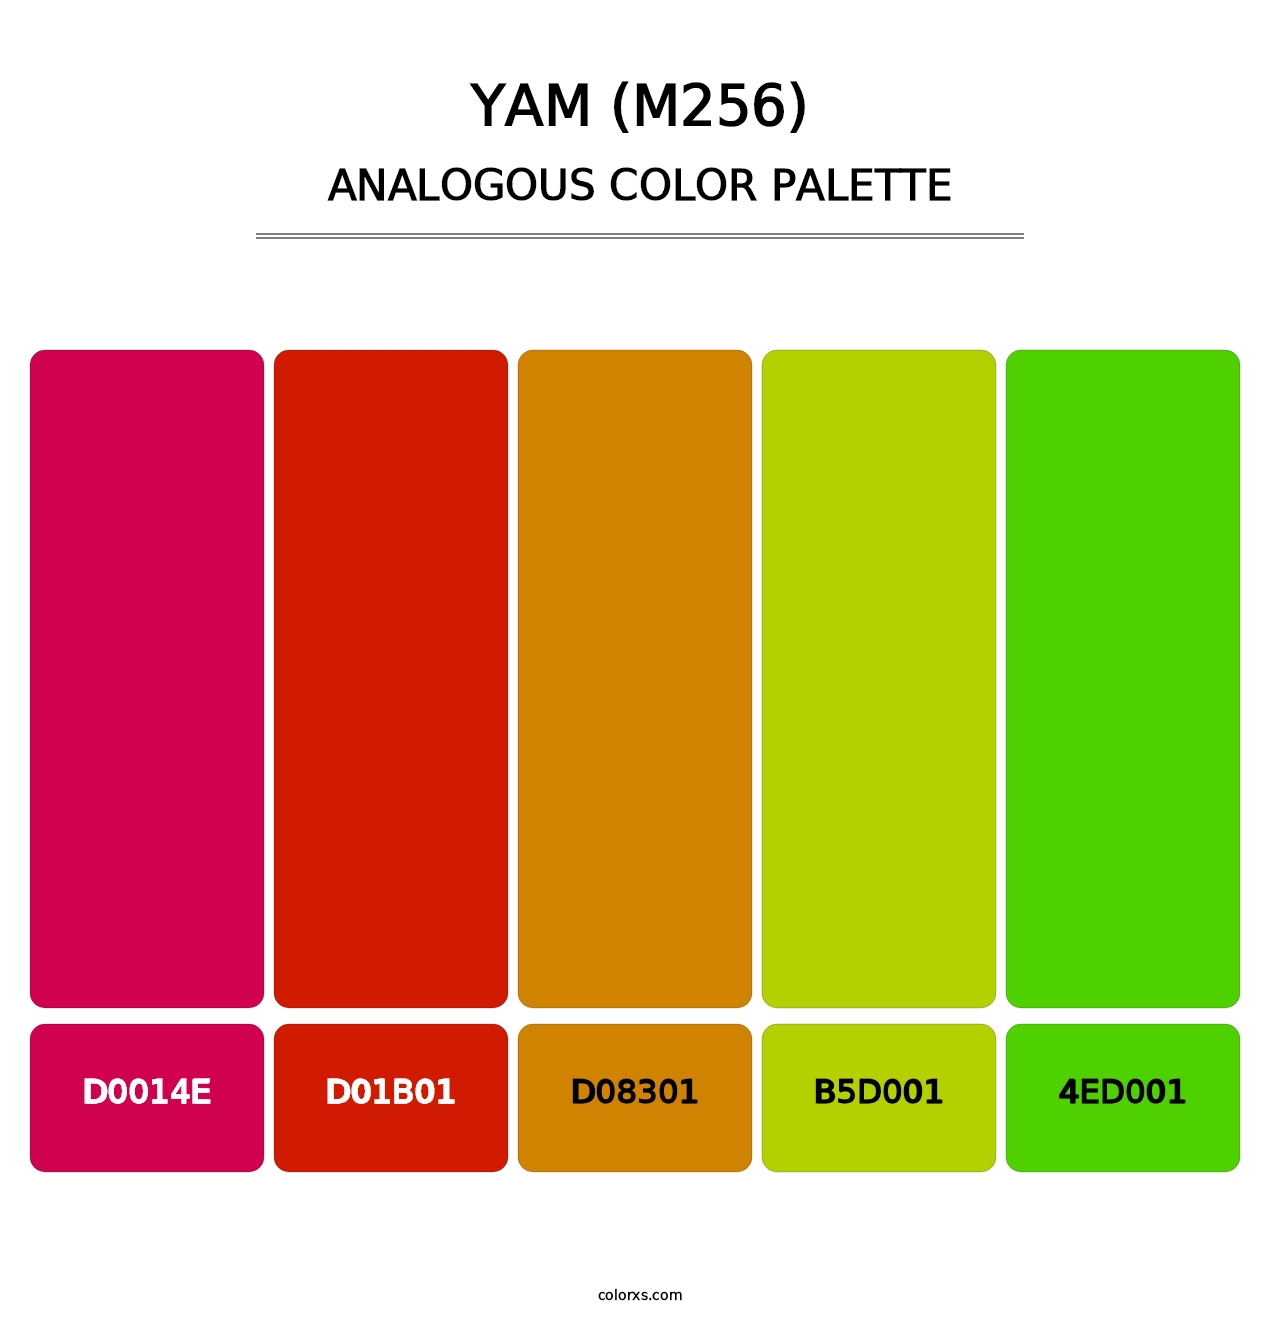 Yam (M256) - Analogous Color Palette